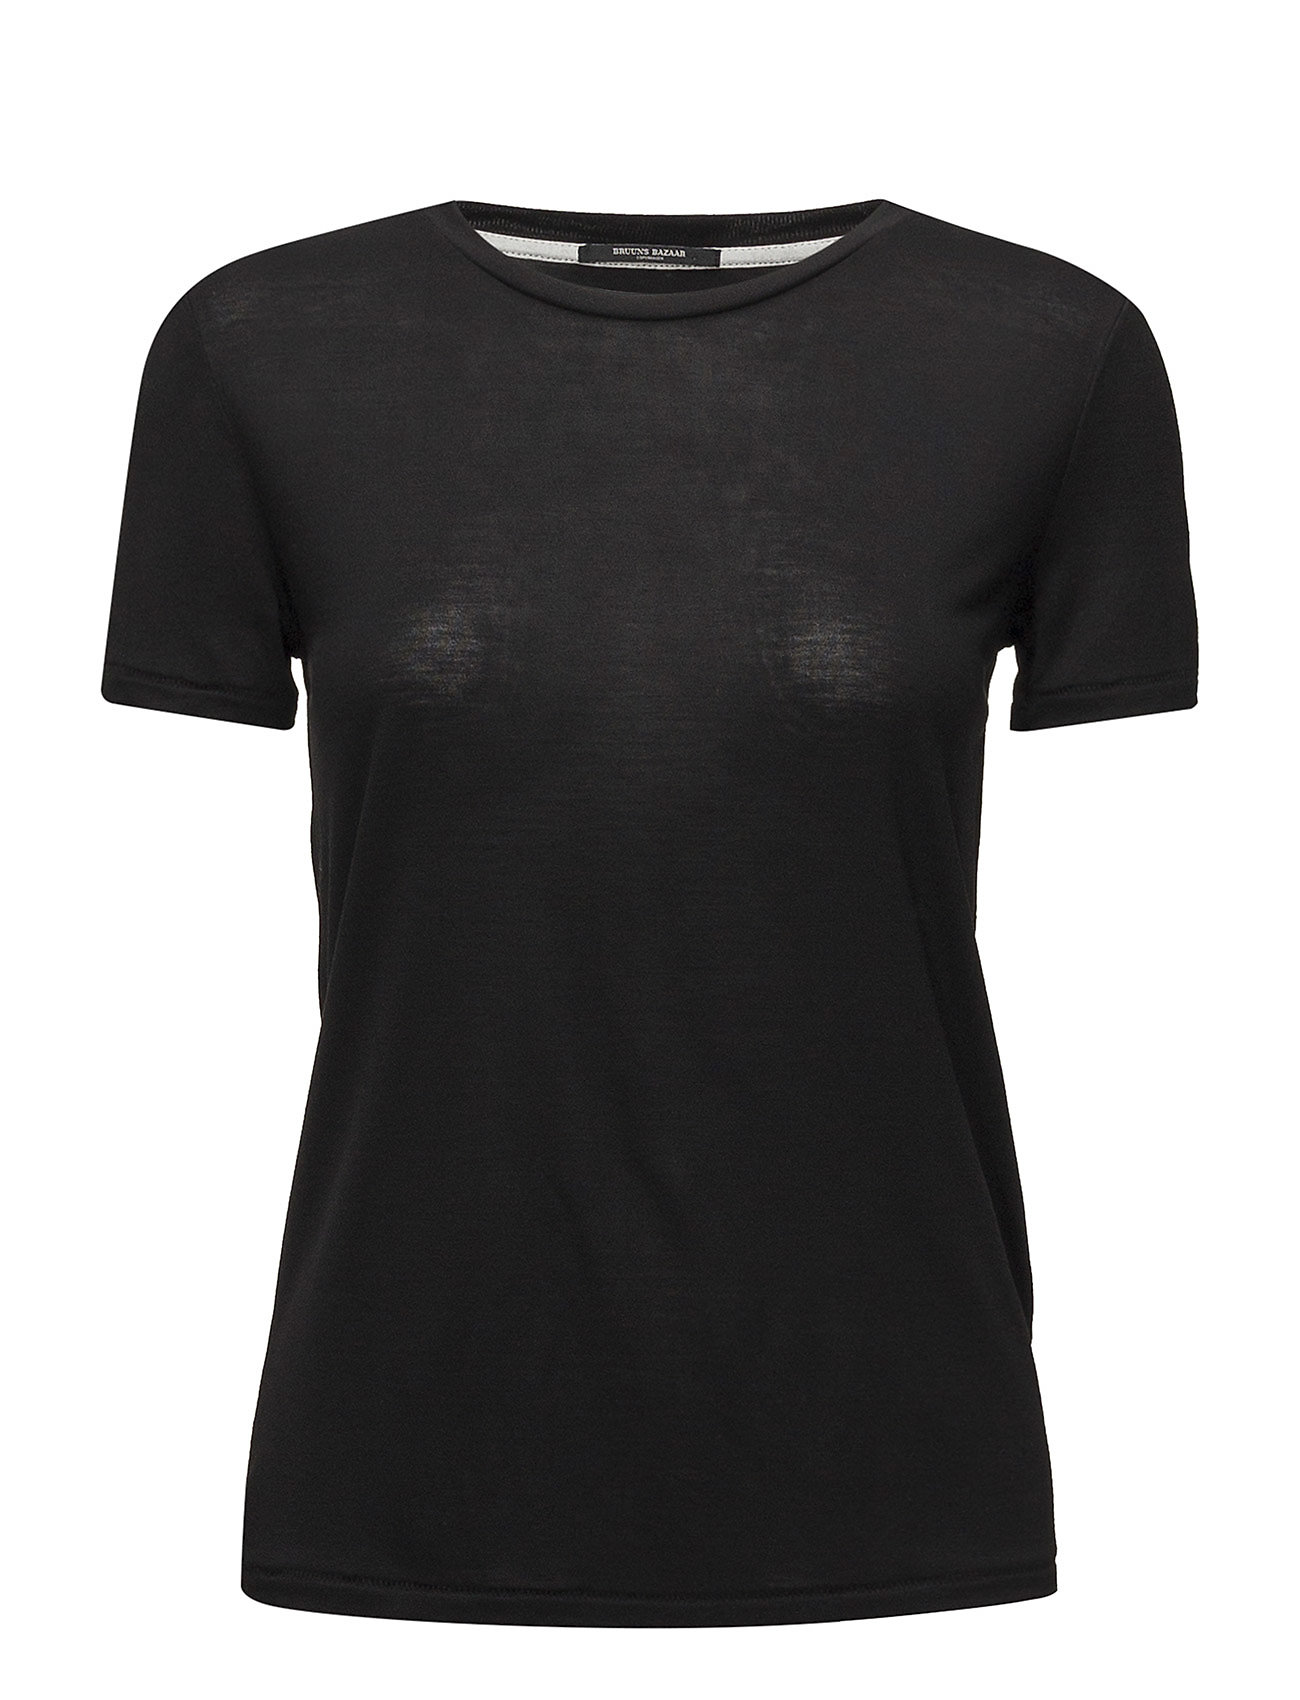 Katka Ss T-Shirt T-shirts & Tops Short-sleeved Musta Bruuns Bazaar